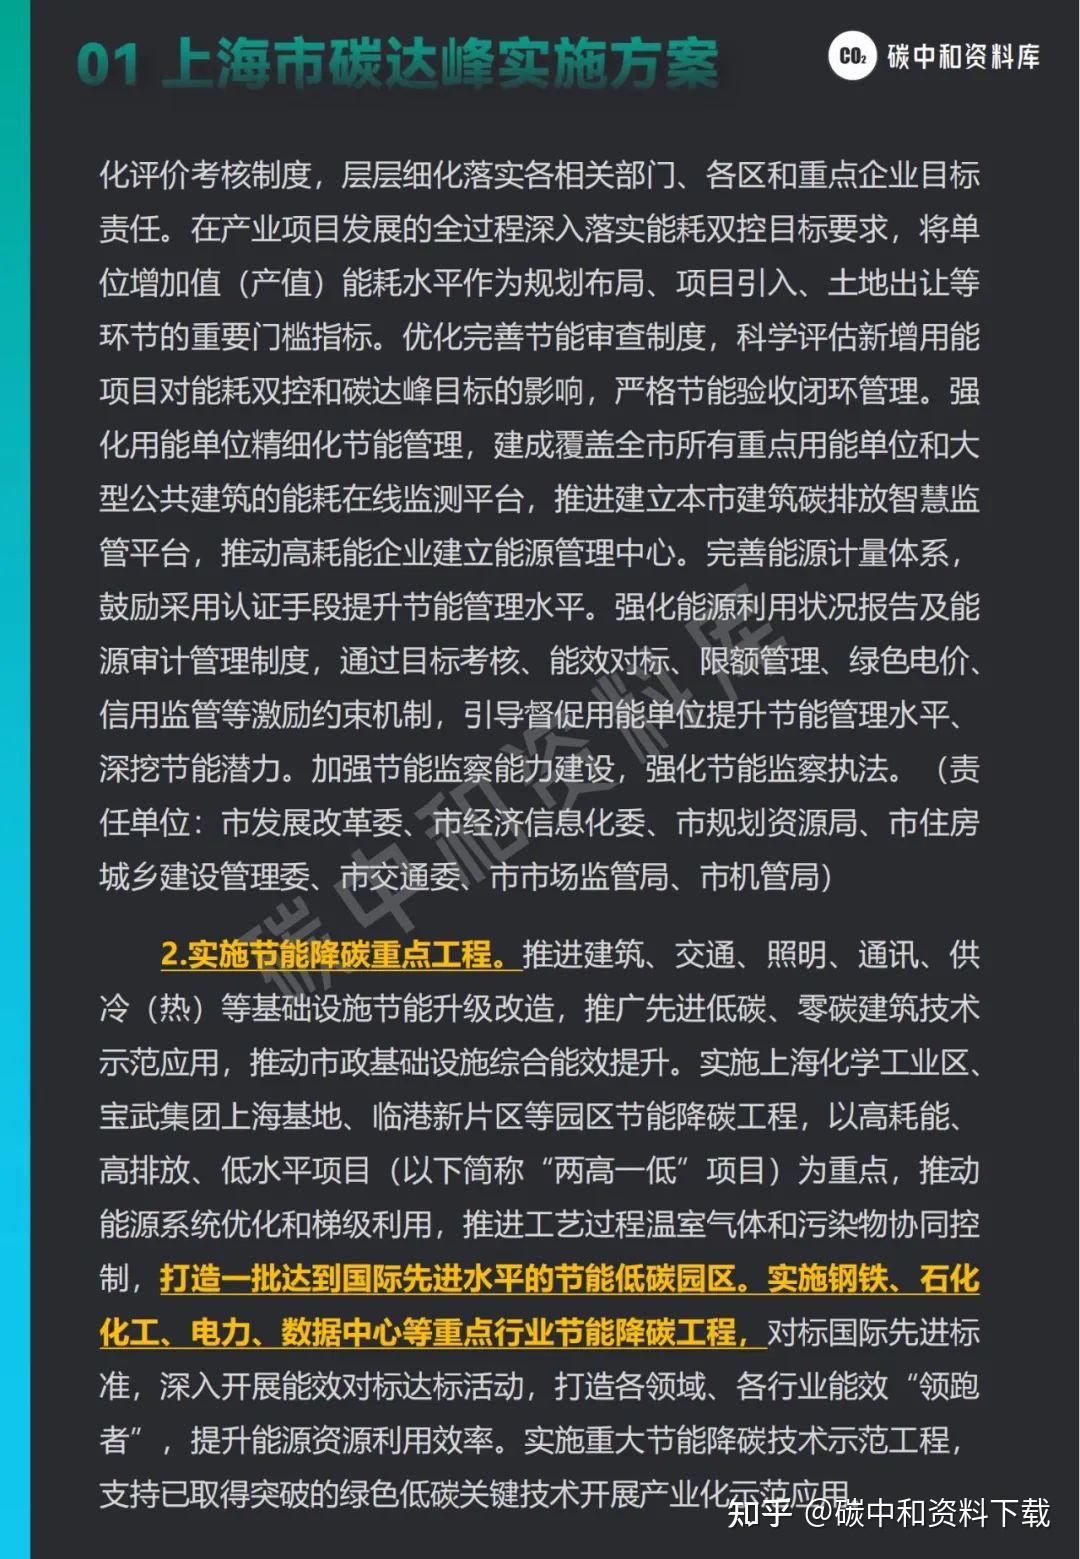 解读上海市技术服务合同标准：背景、核心内